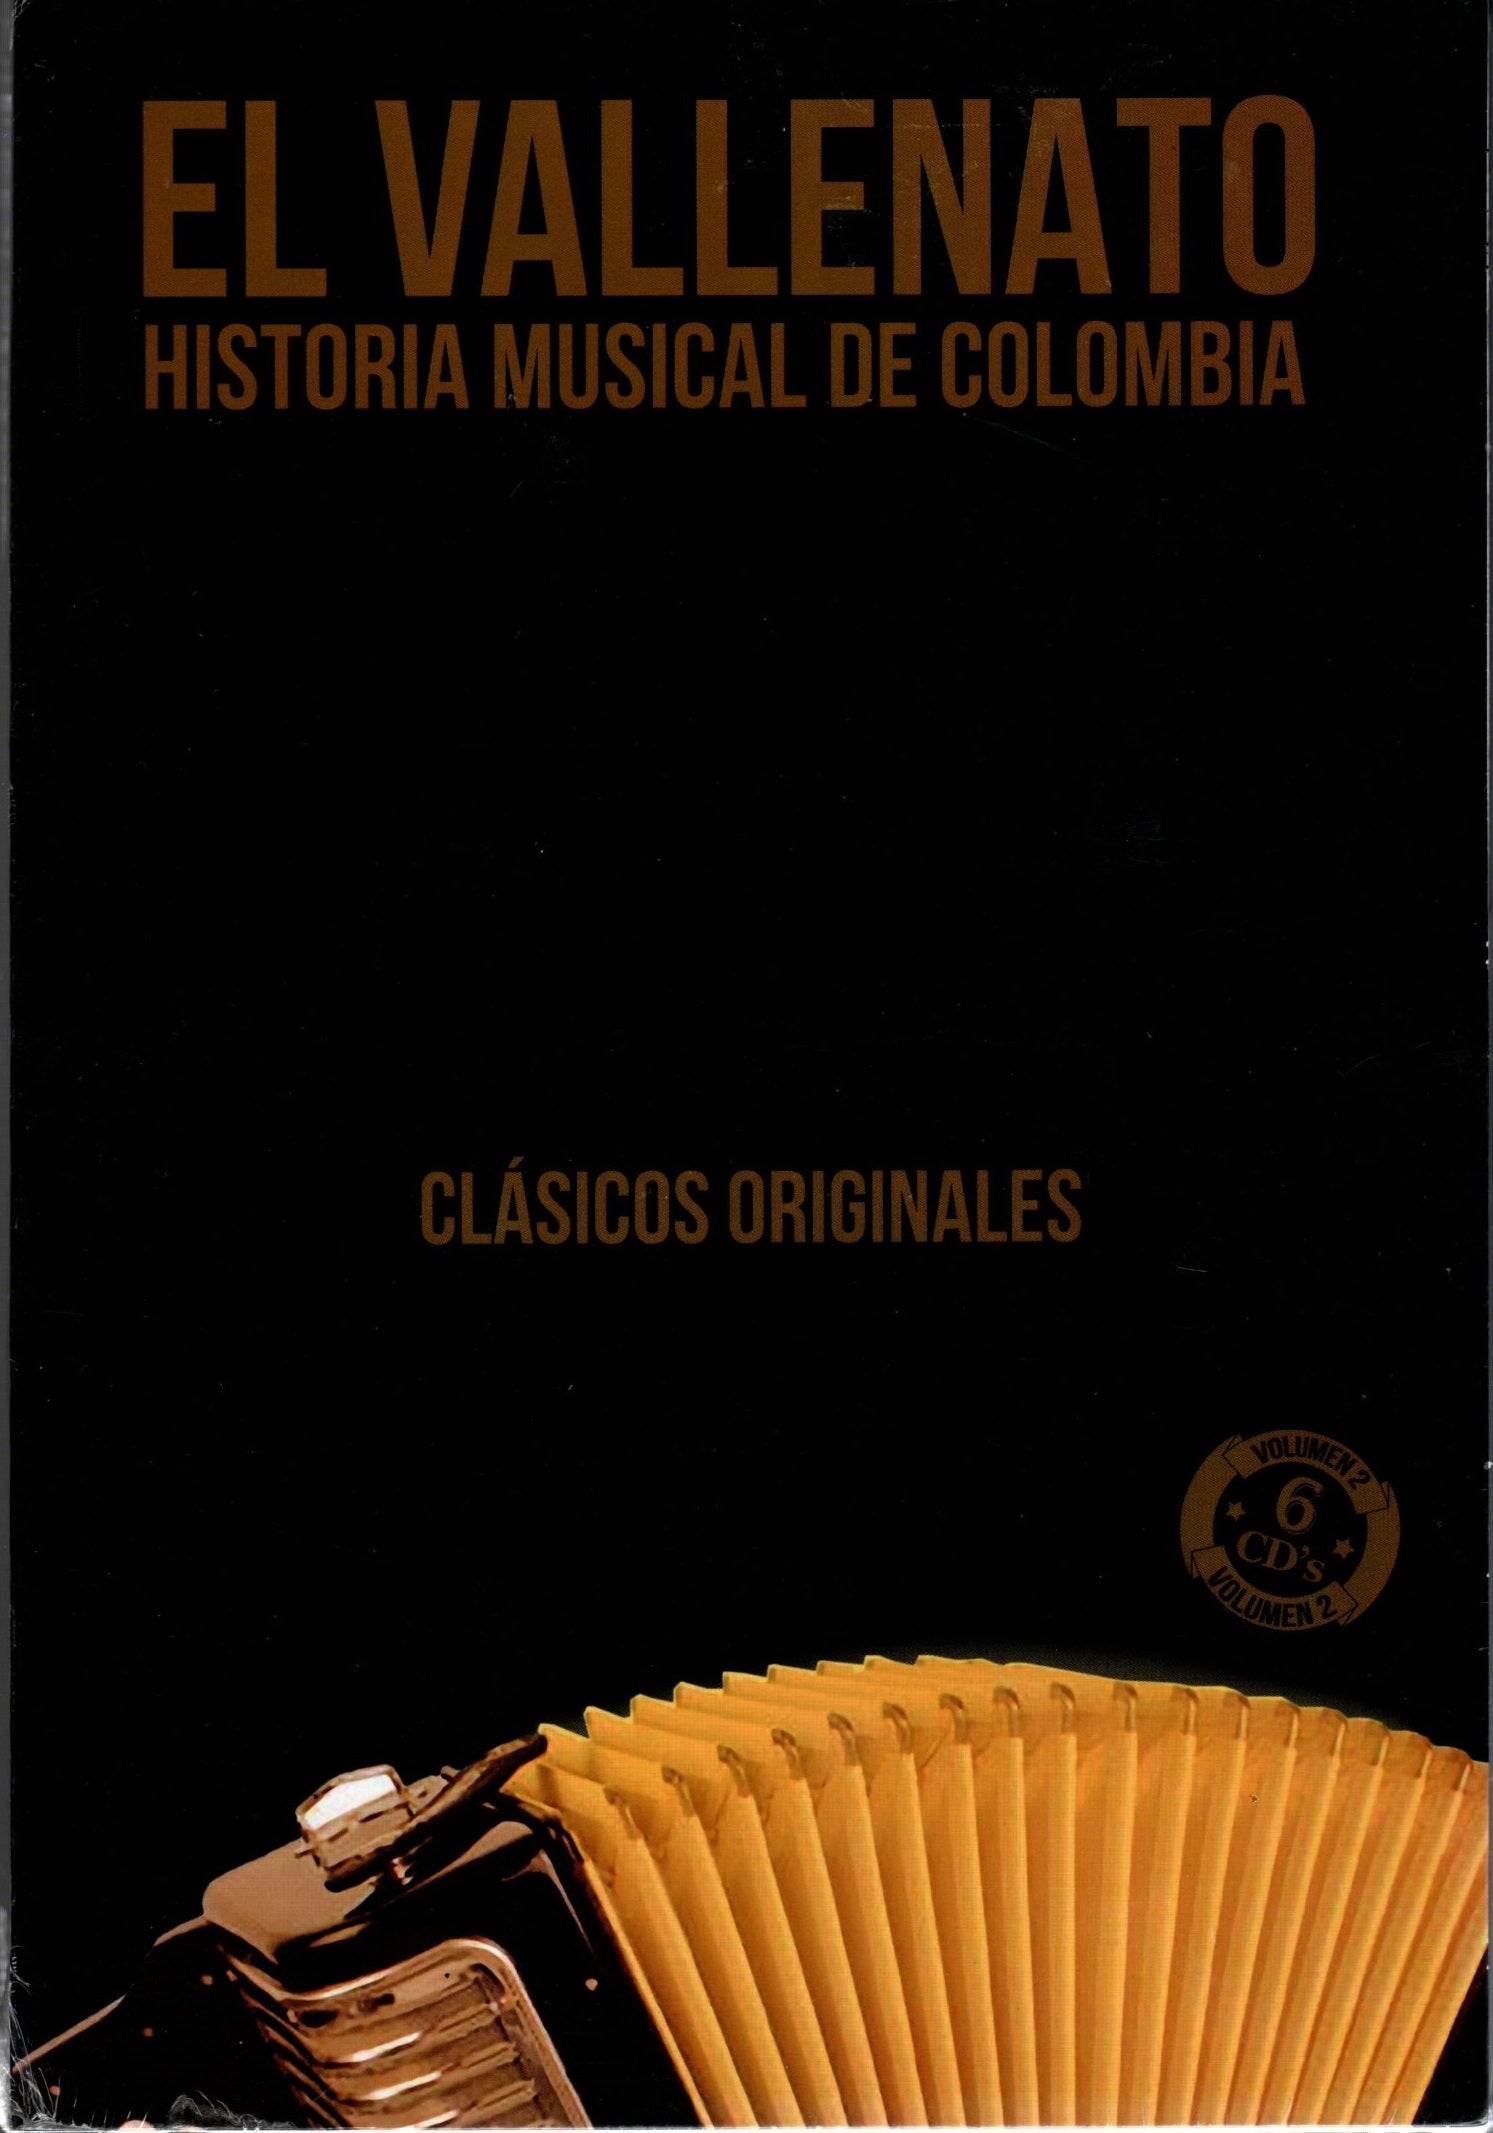 CD X6 El Vallenato - Historia musical de Colombia Vol.2